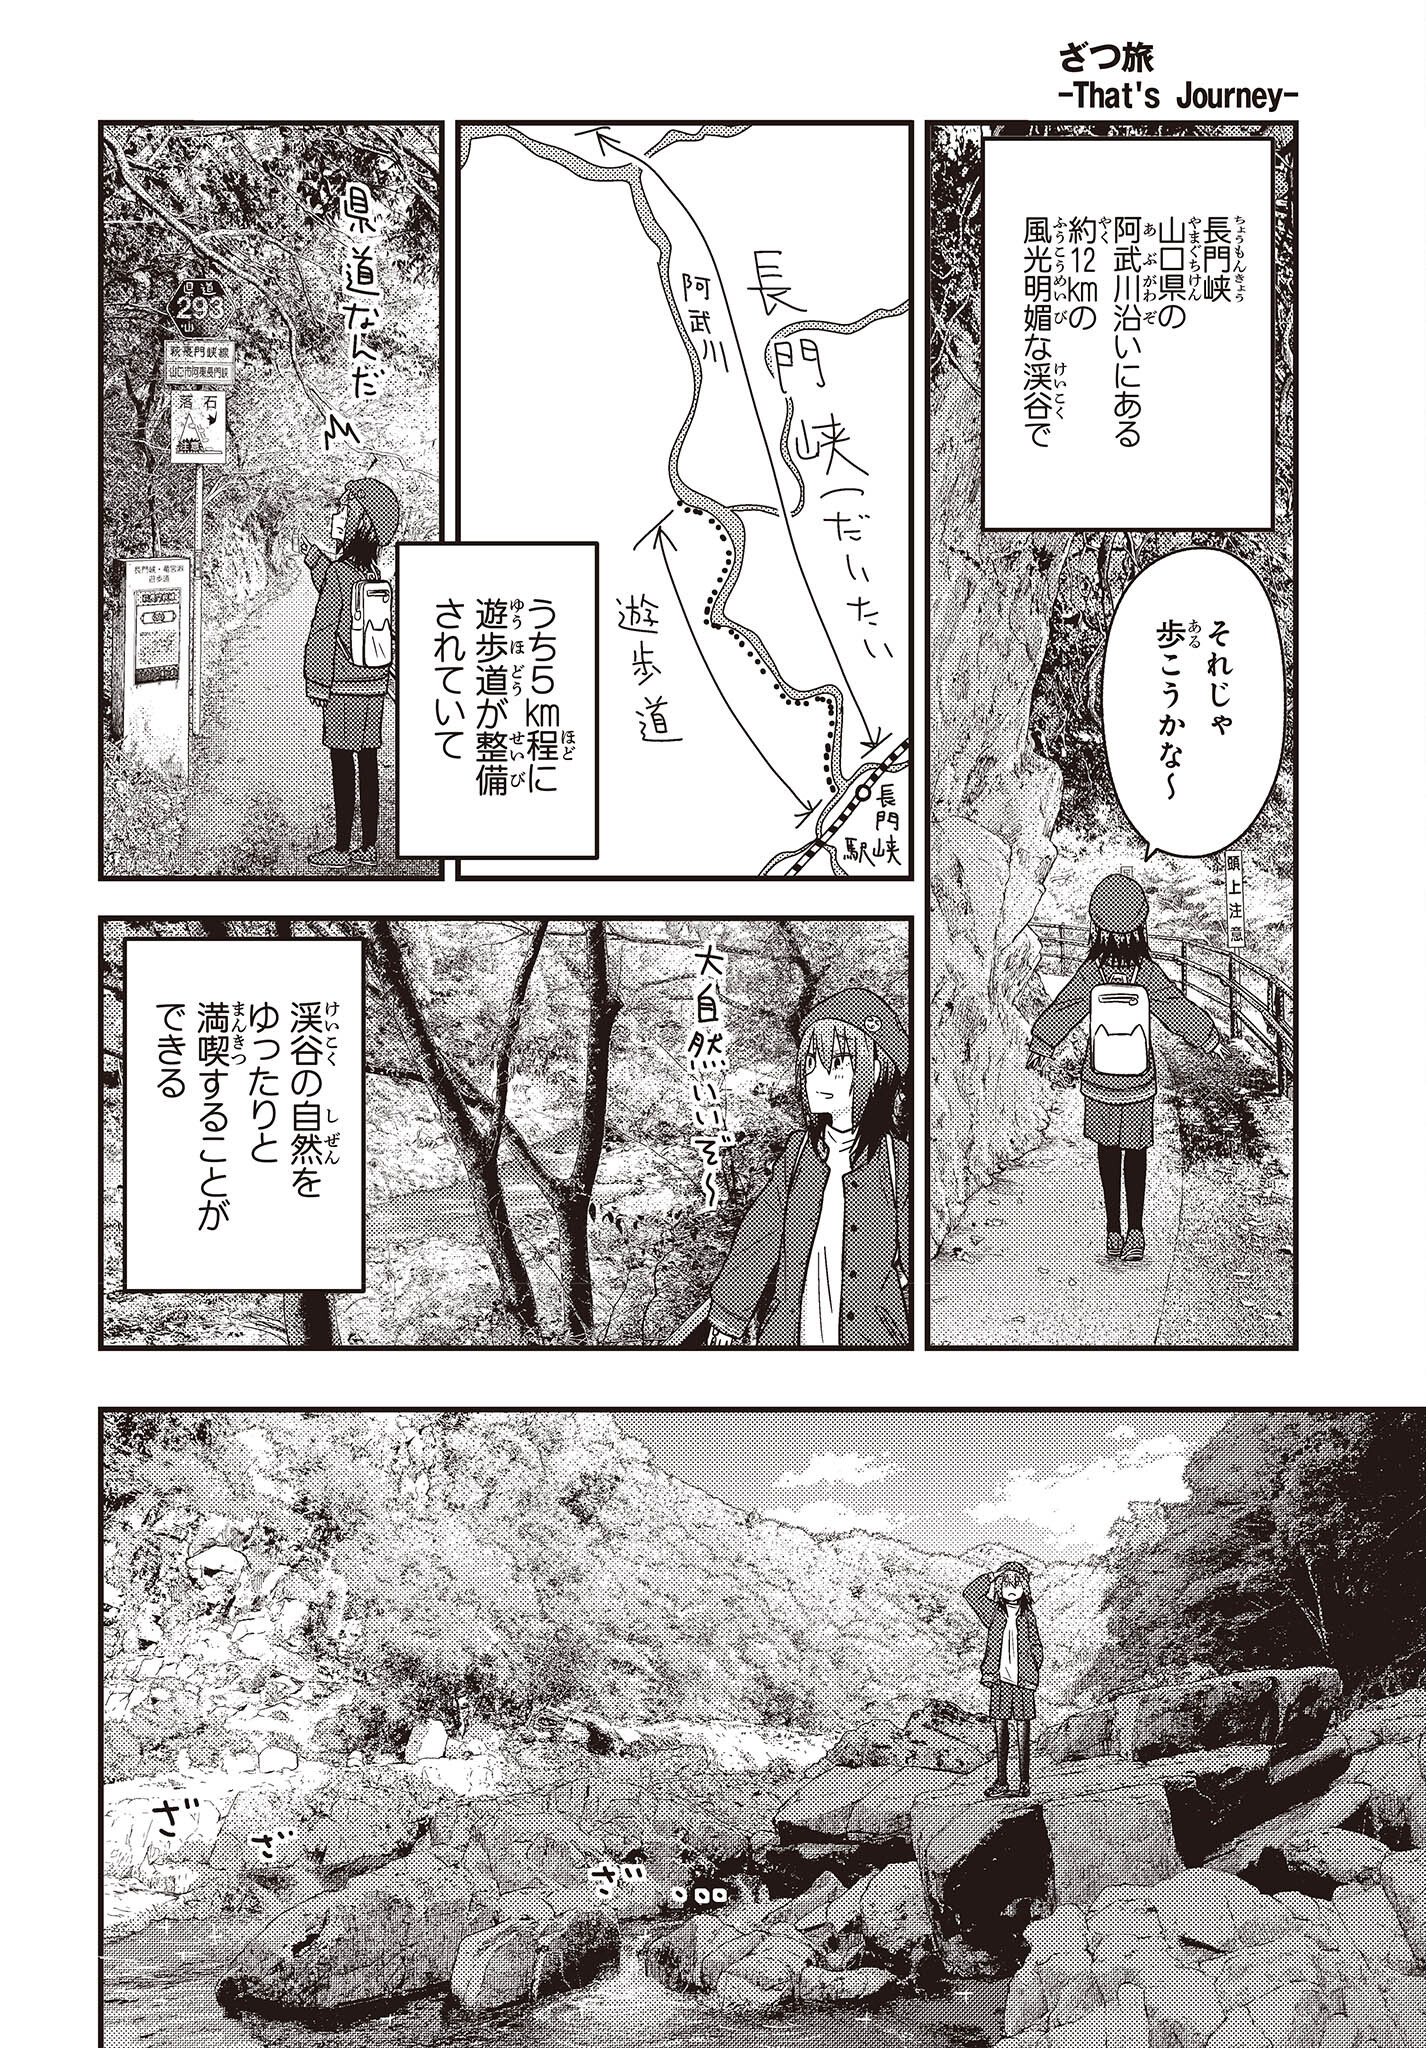 ざつ旅-That’s Journey- 第29話 - Page 18